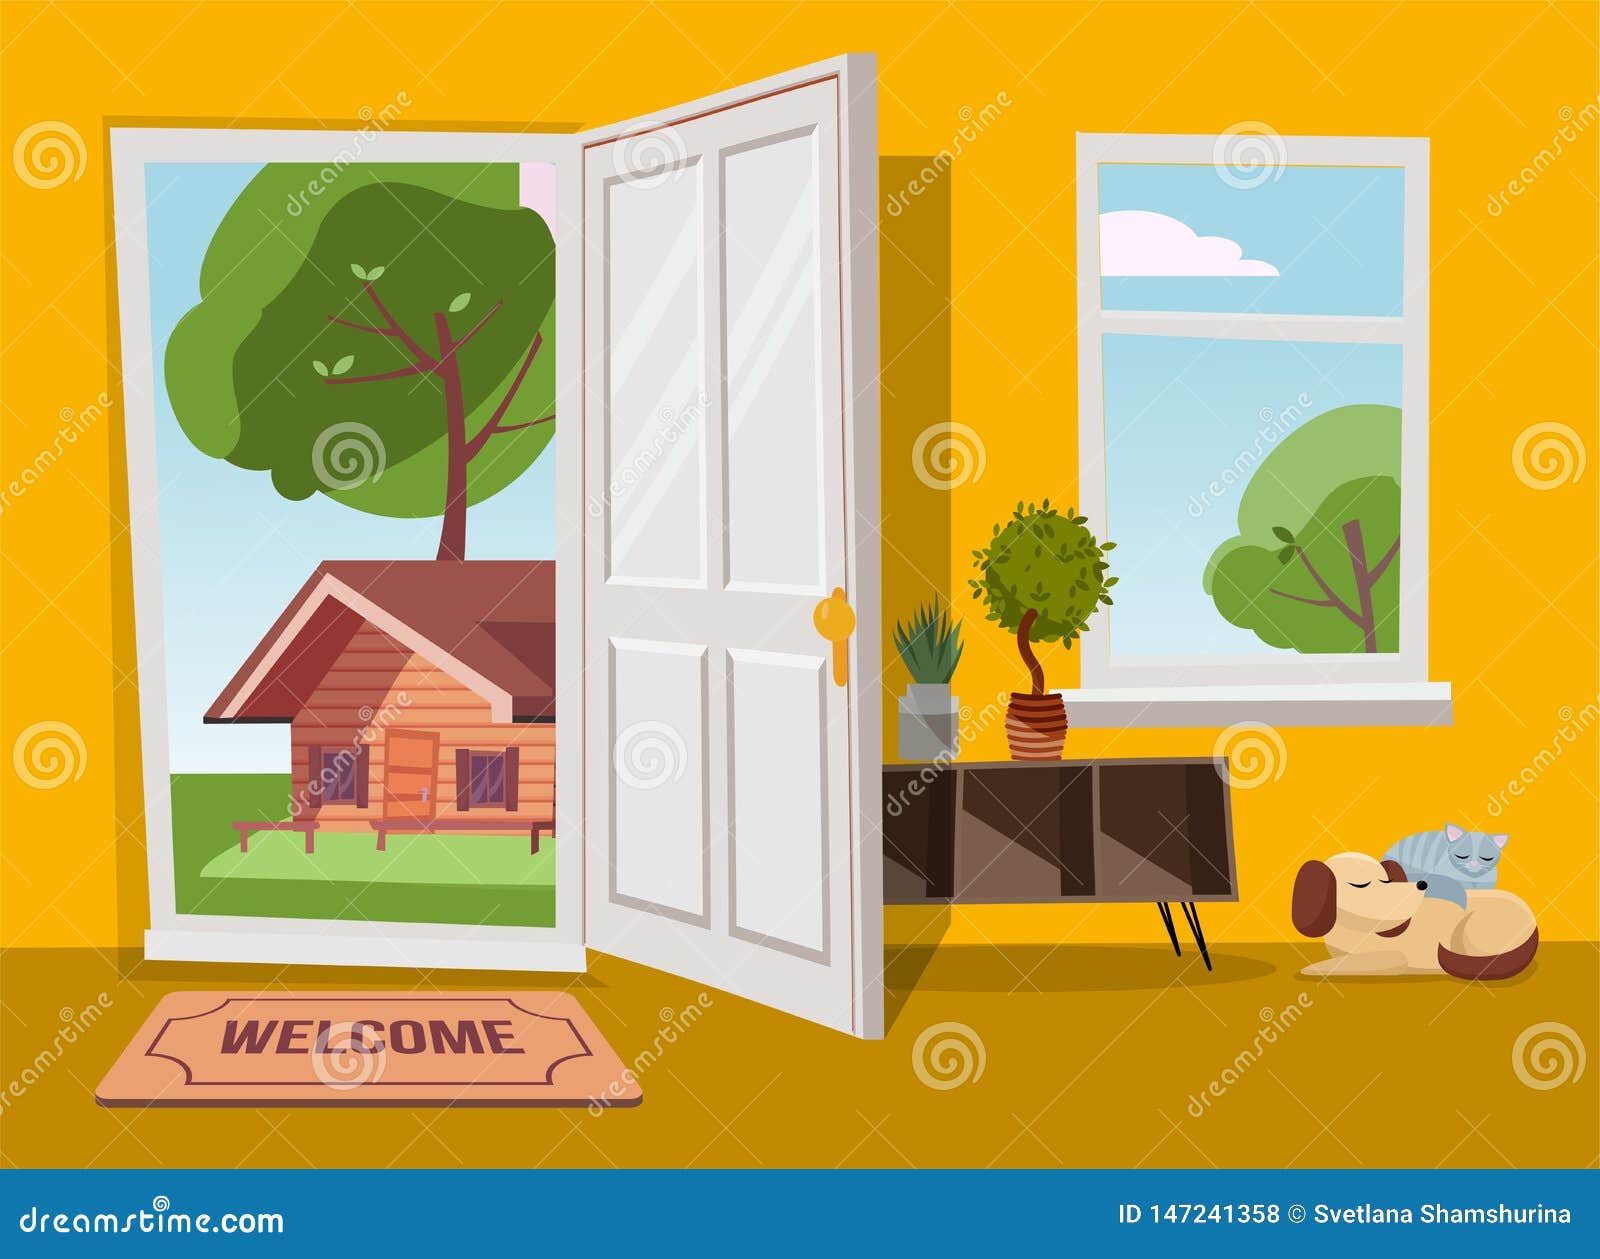 Open Door Cartoon Stock Illustrations – 10,326 Open Door Cartoon Stock  Illustrations, Vectors & Clipart - Dreamstime